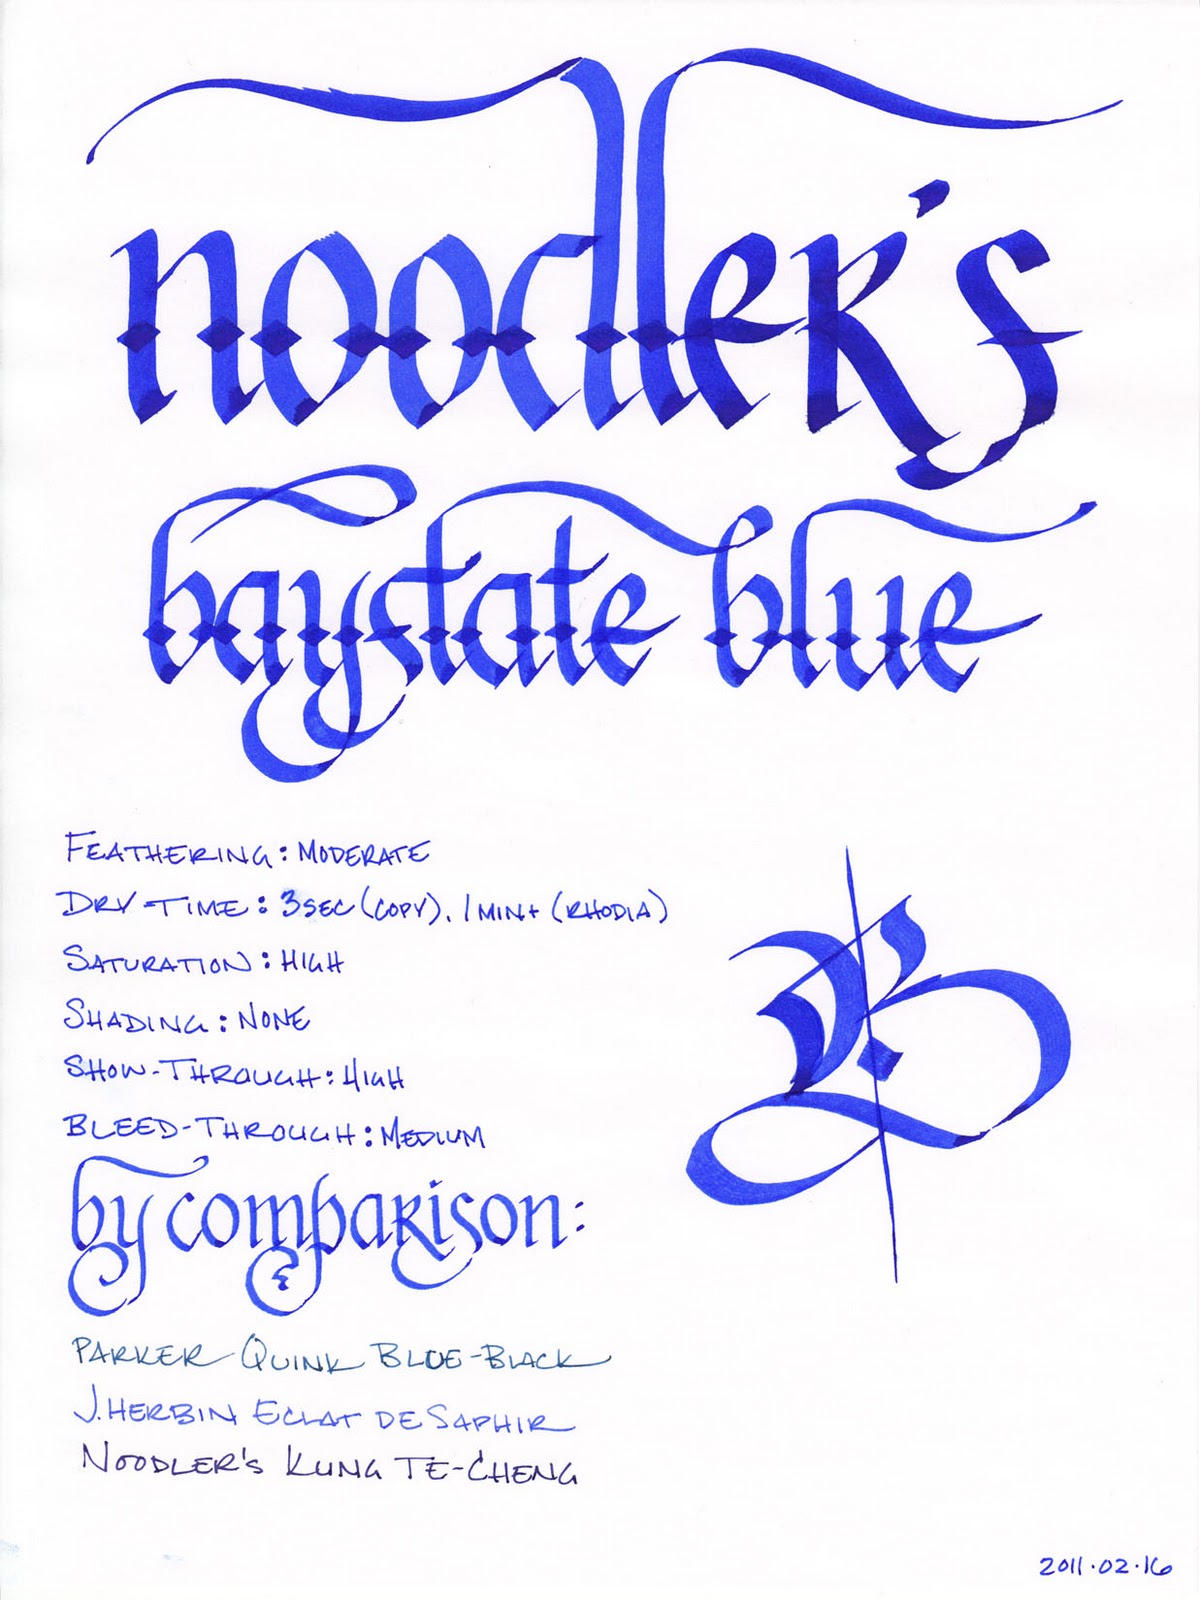 Noodler's Standard Inks (3 oz.)